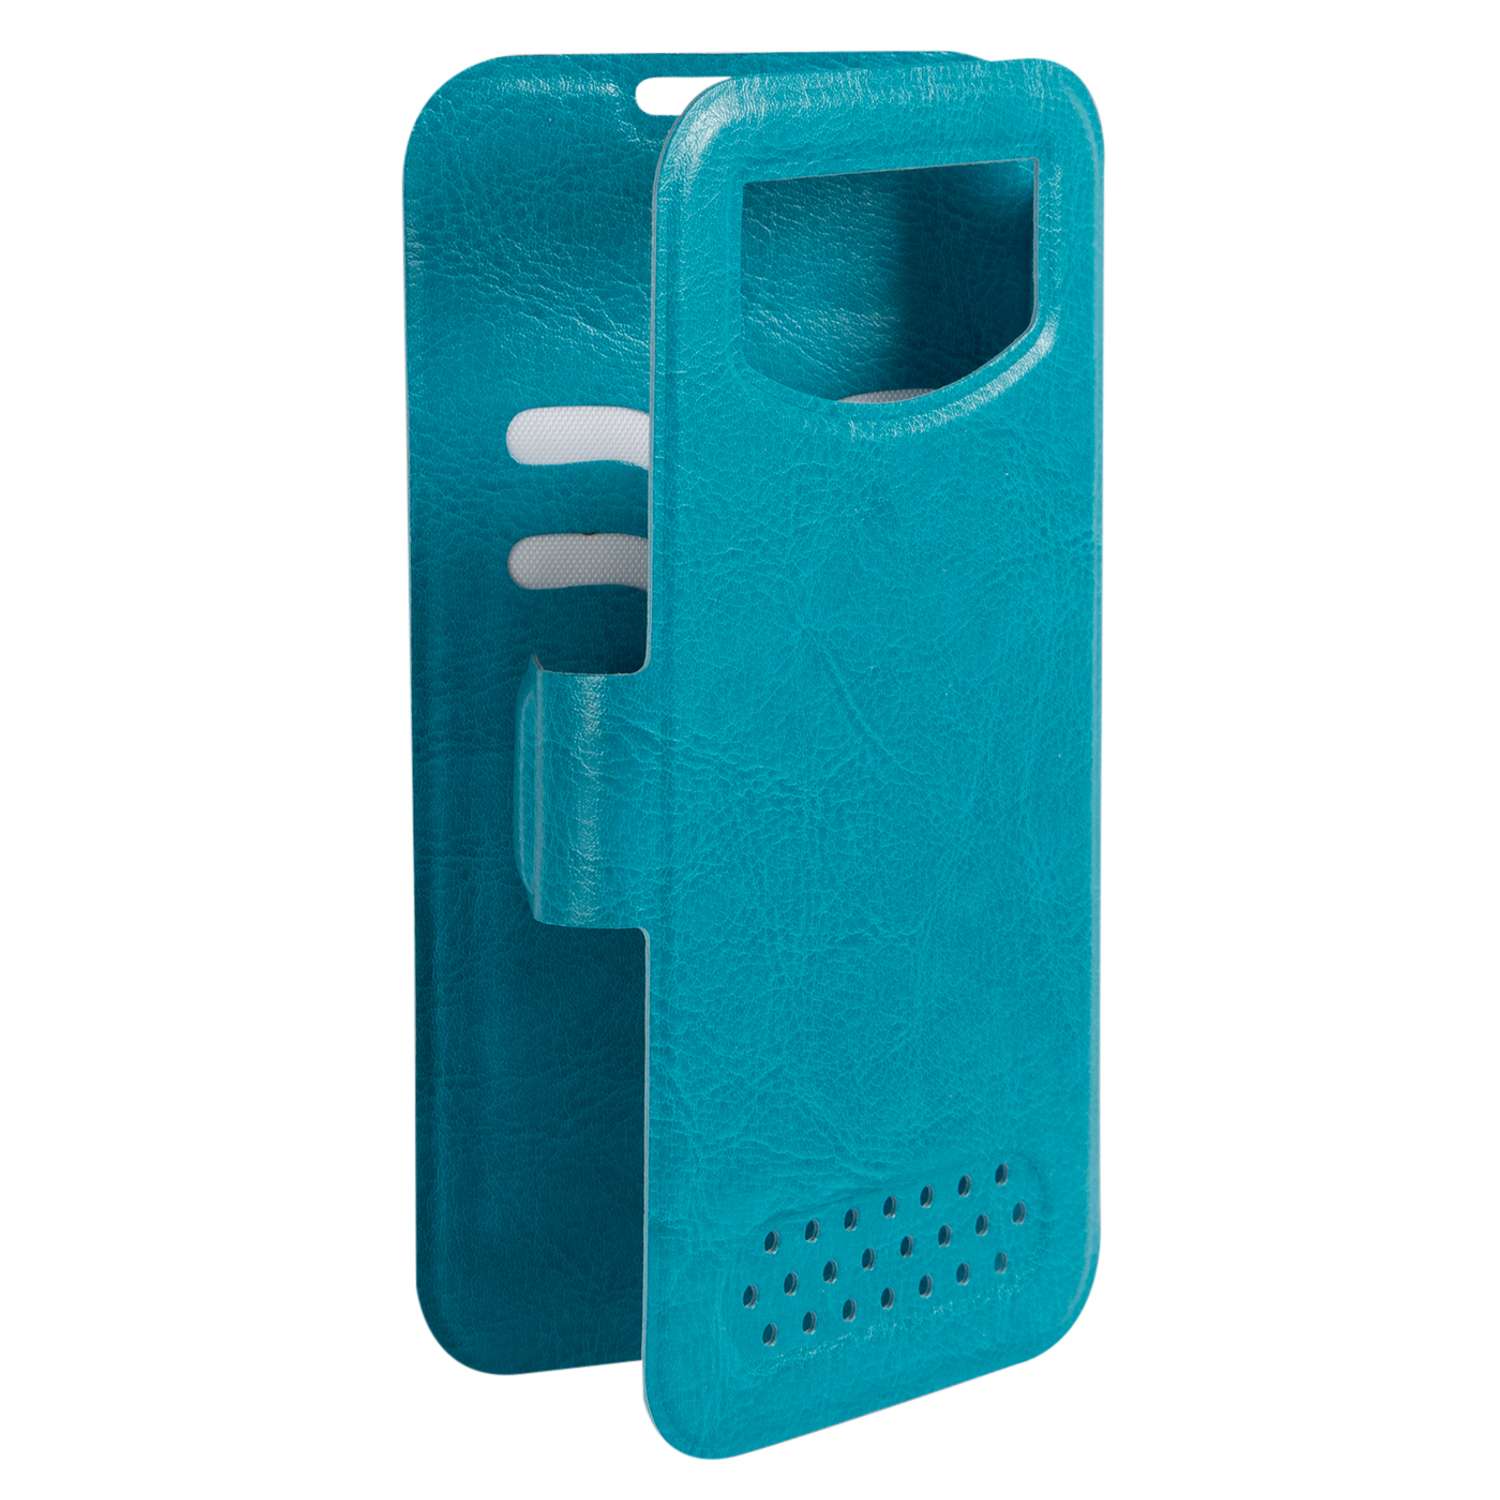 Чехол универсальный iBox Universal для телефонов 4.2-5 дюйма голубой - фото 4